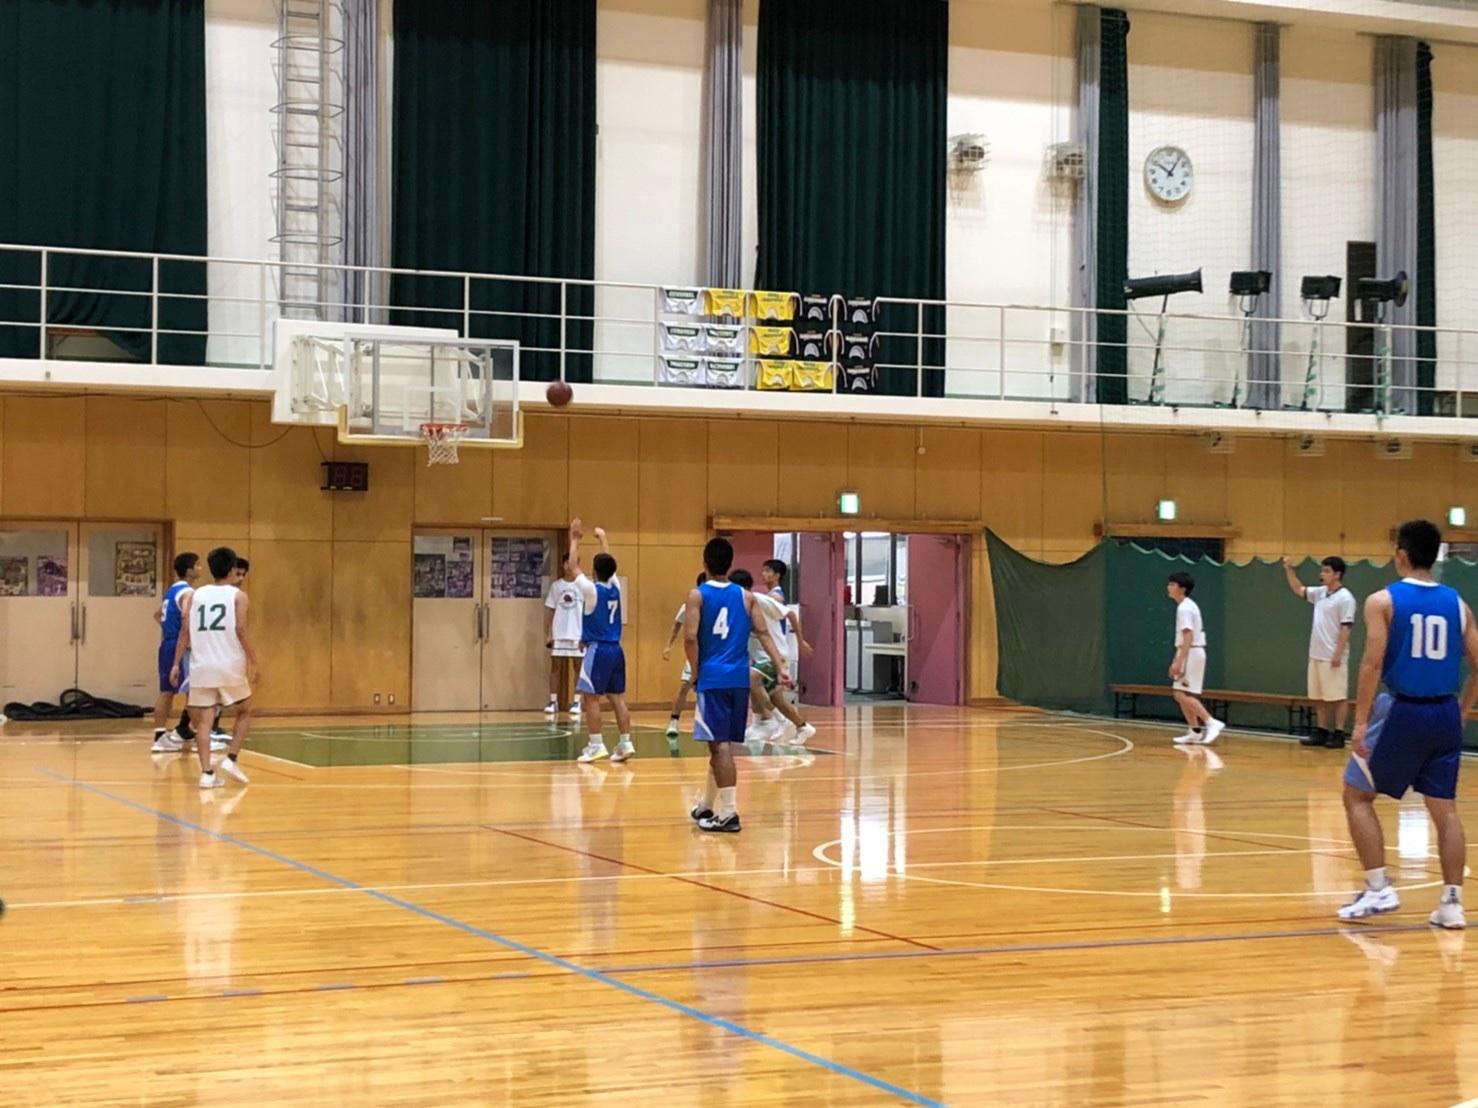 泉北高校男子バスケットボール部 東住吉総合高校と京都府の山城高校と練習試合をしました クラブブログ